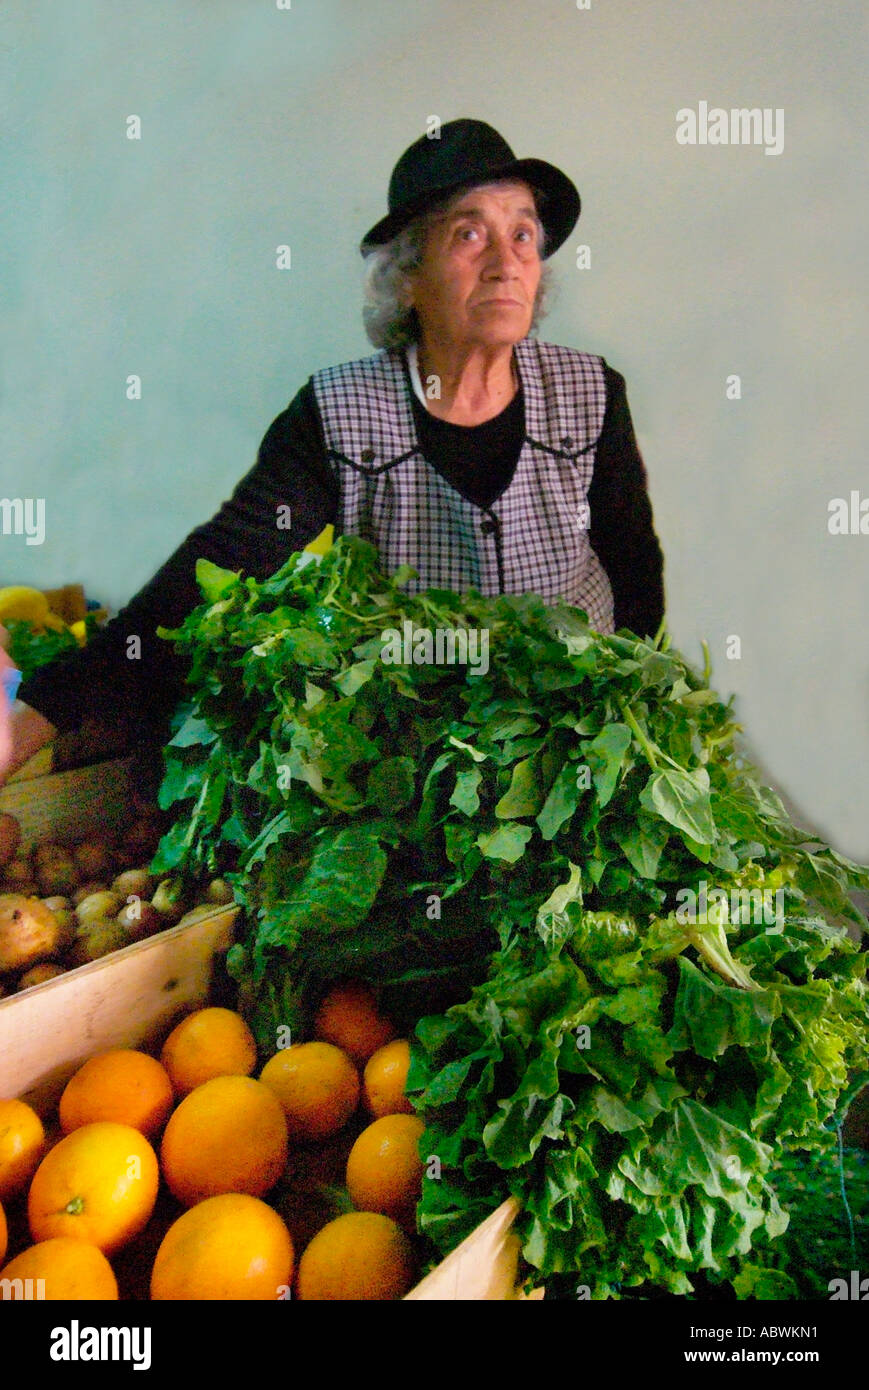 Frisches Obst Gemüse orange Frau stand Halter traditionellen schwarzen Hut Box Case grün Einzelhandel Outdoor-Marktstand Portugal Portug Stockfoto